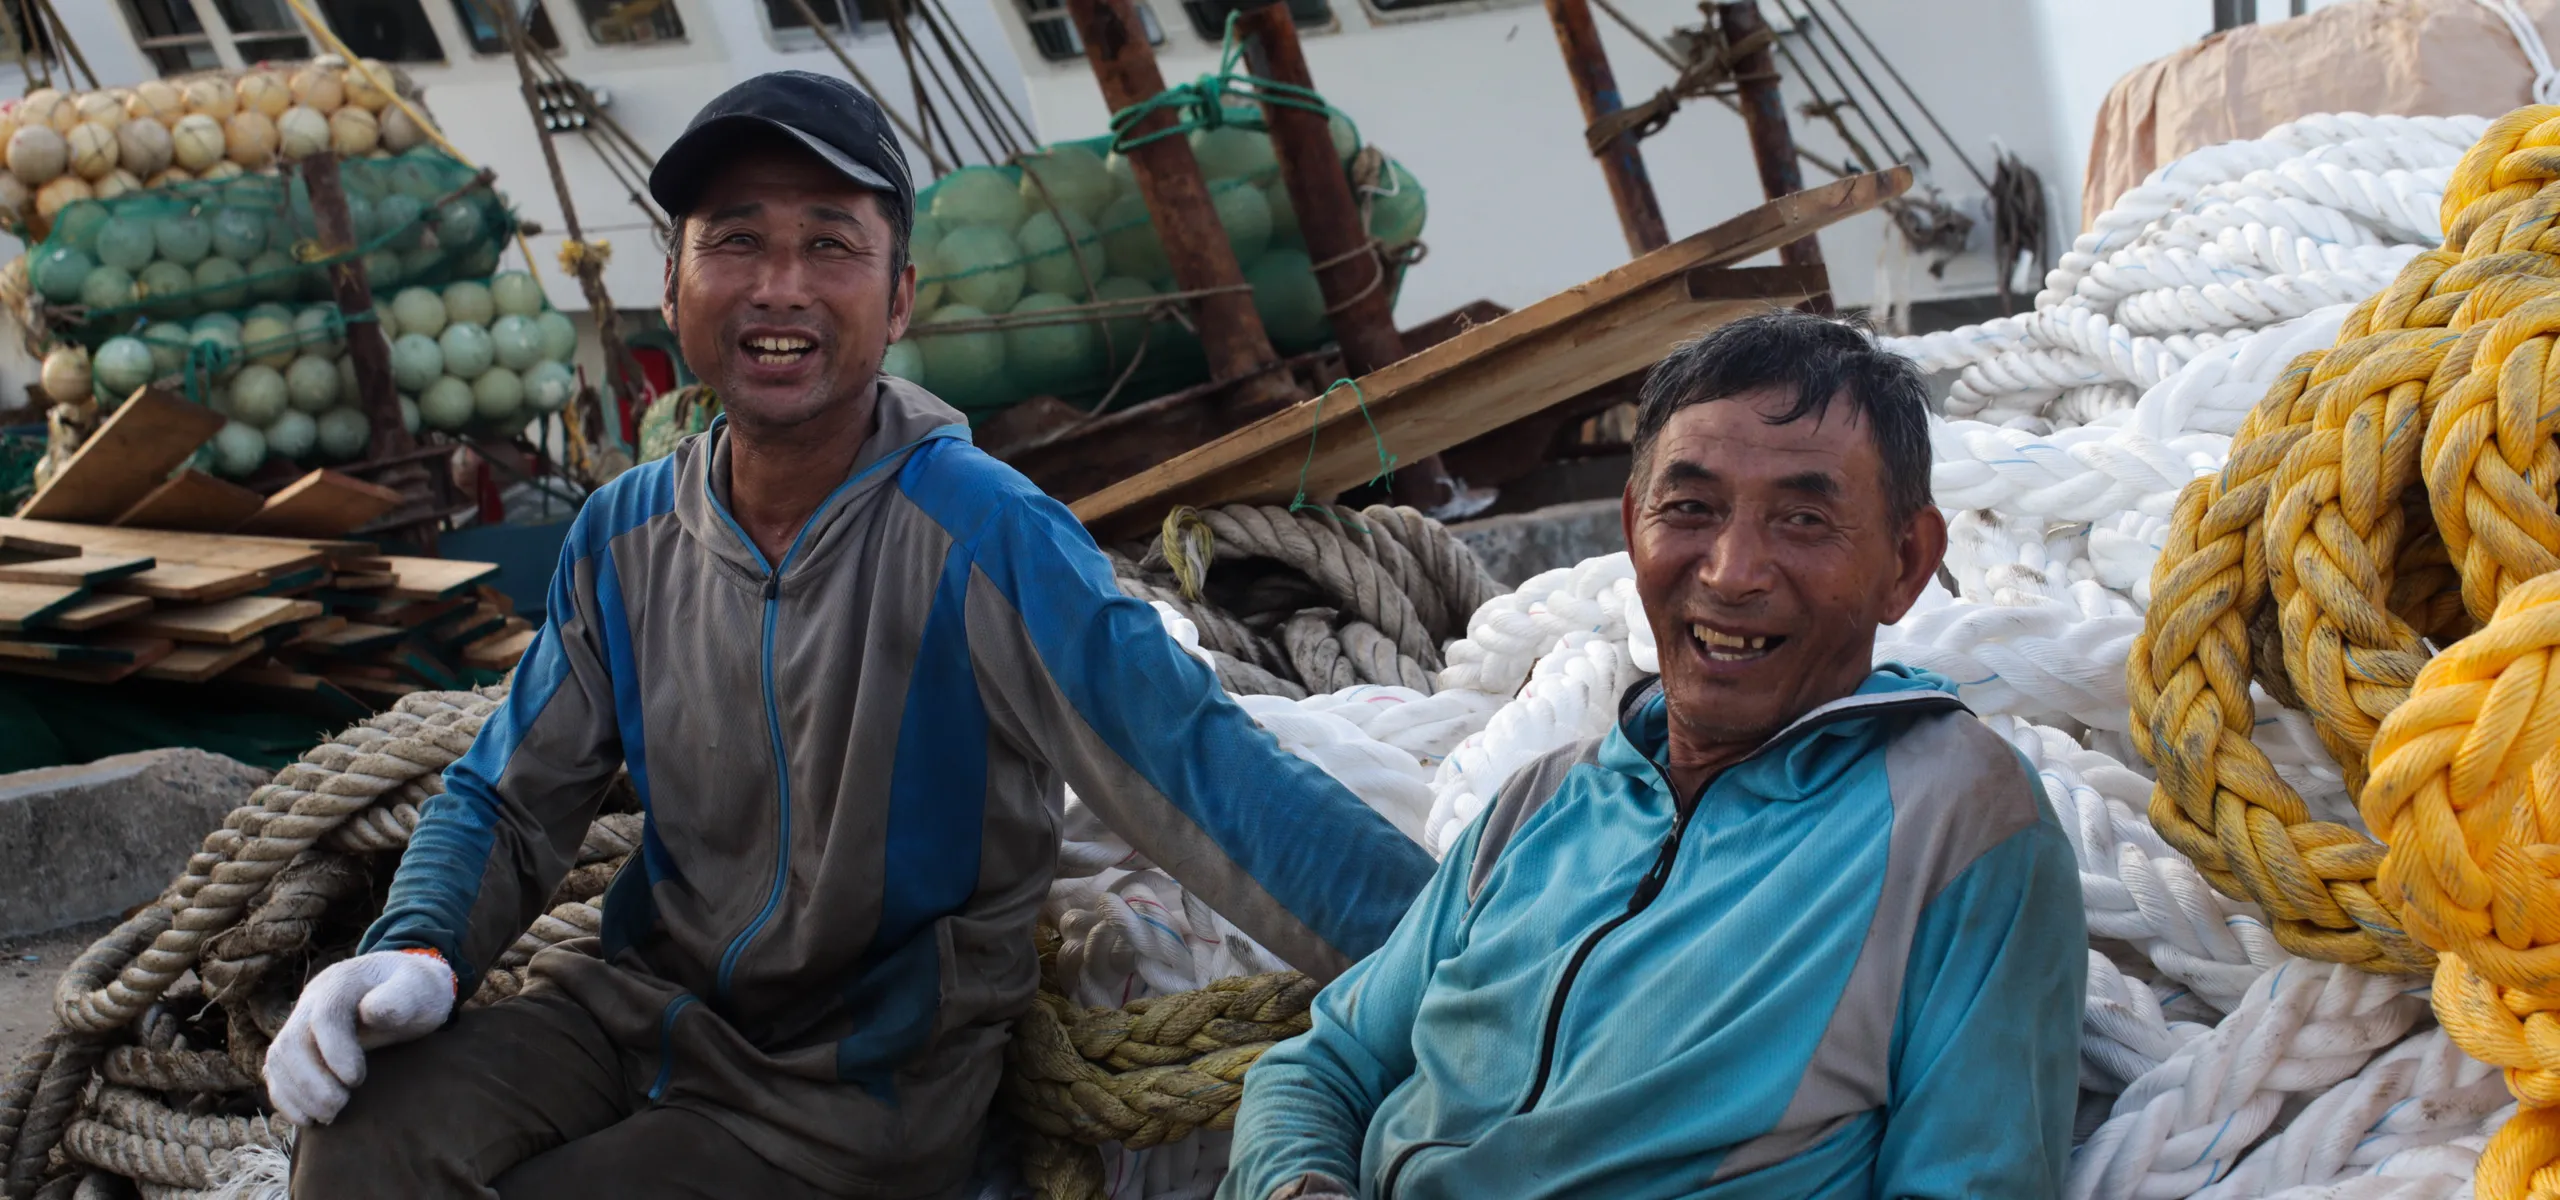 Fishermen in Zhoushan, Zhejiang